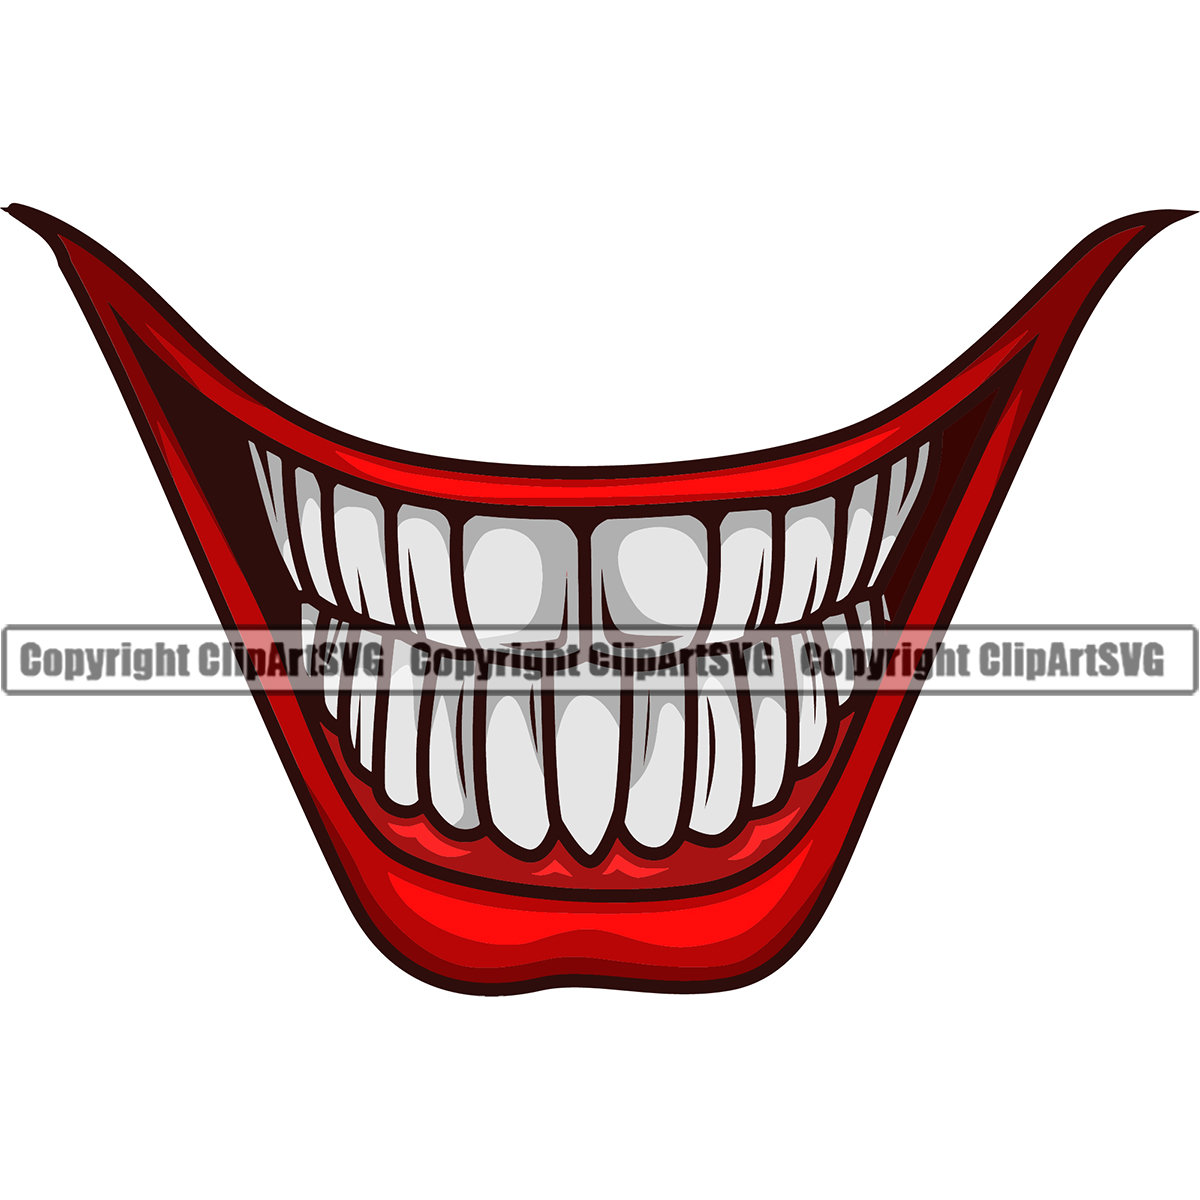 arbusto Normalización Persona a cargo Joker Smile Clown Laughing Ha Funny Mouth Mask Evil Grin - Etsy México